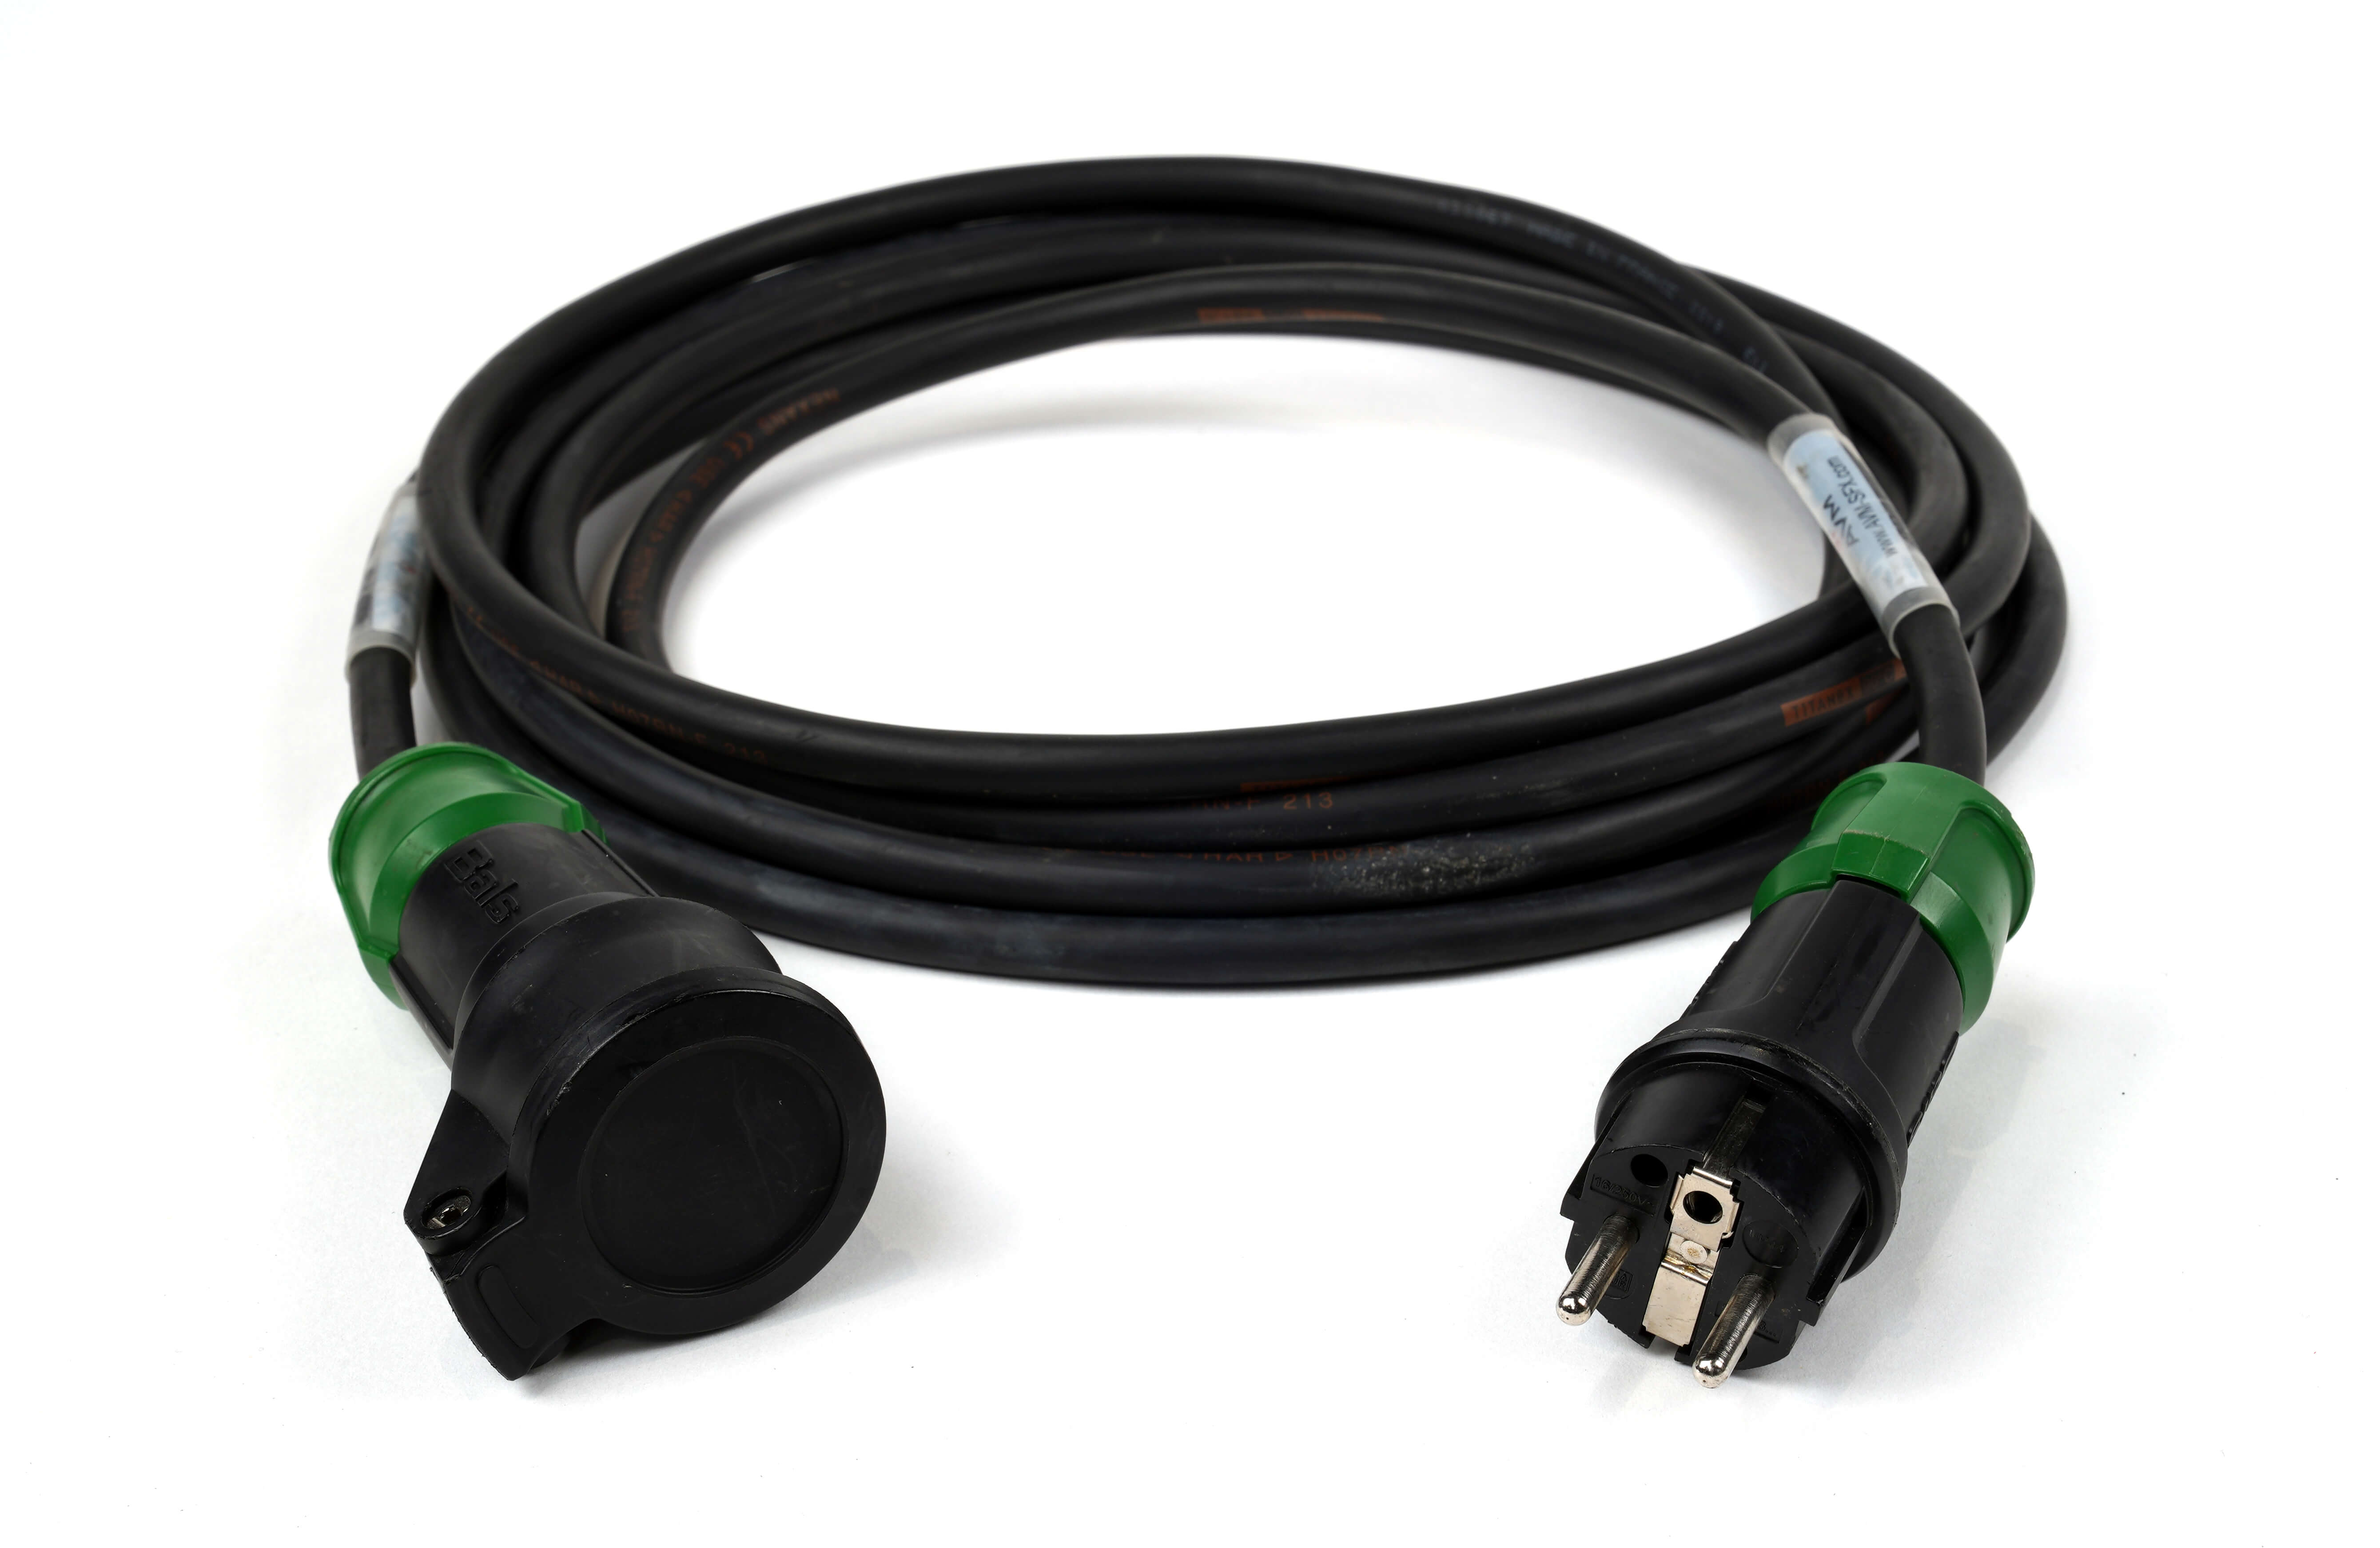 Schuko cables